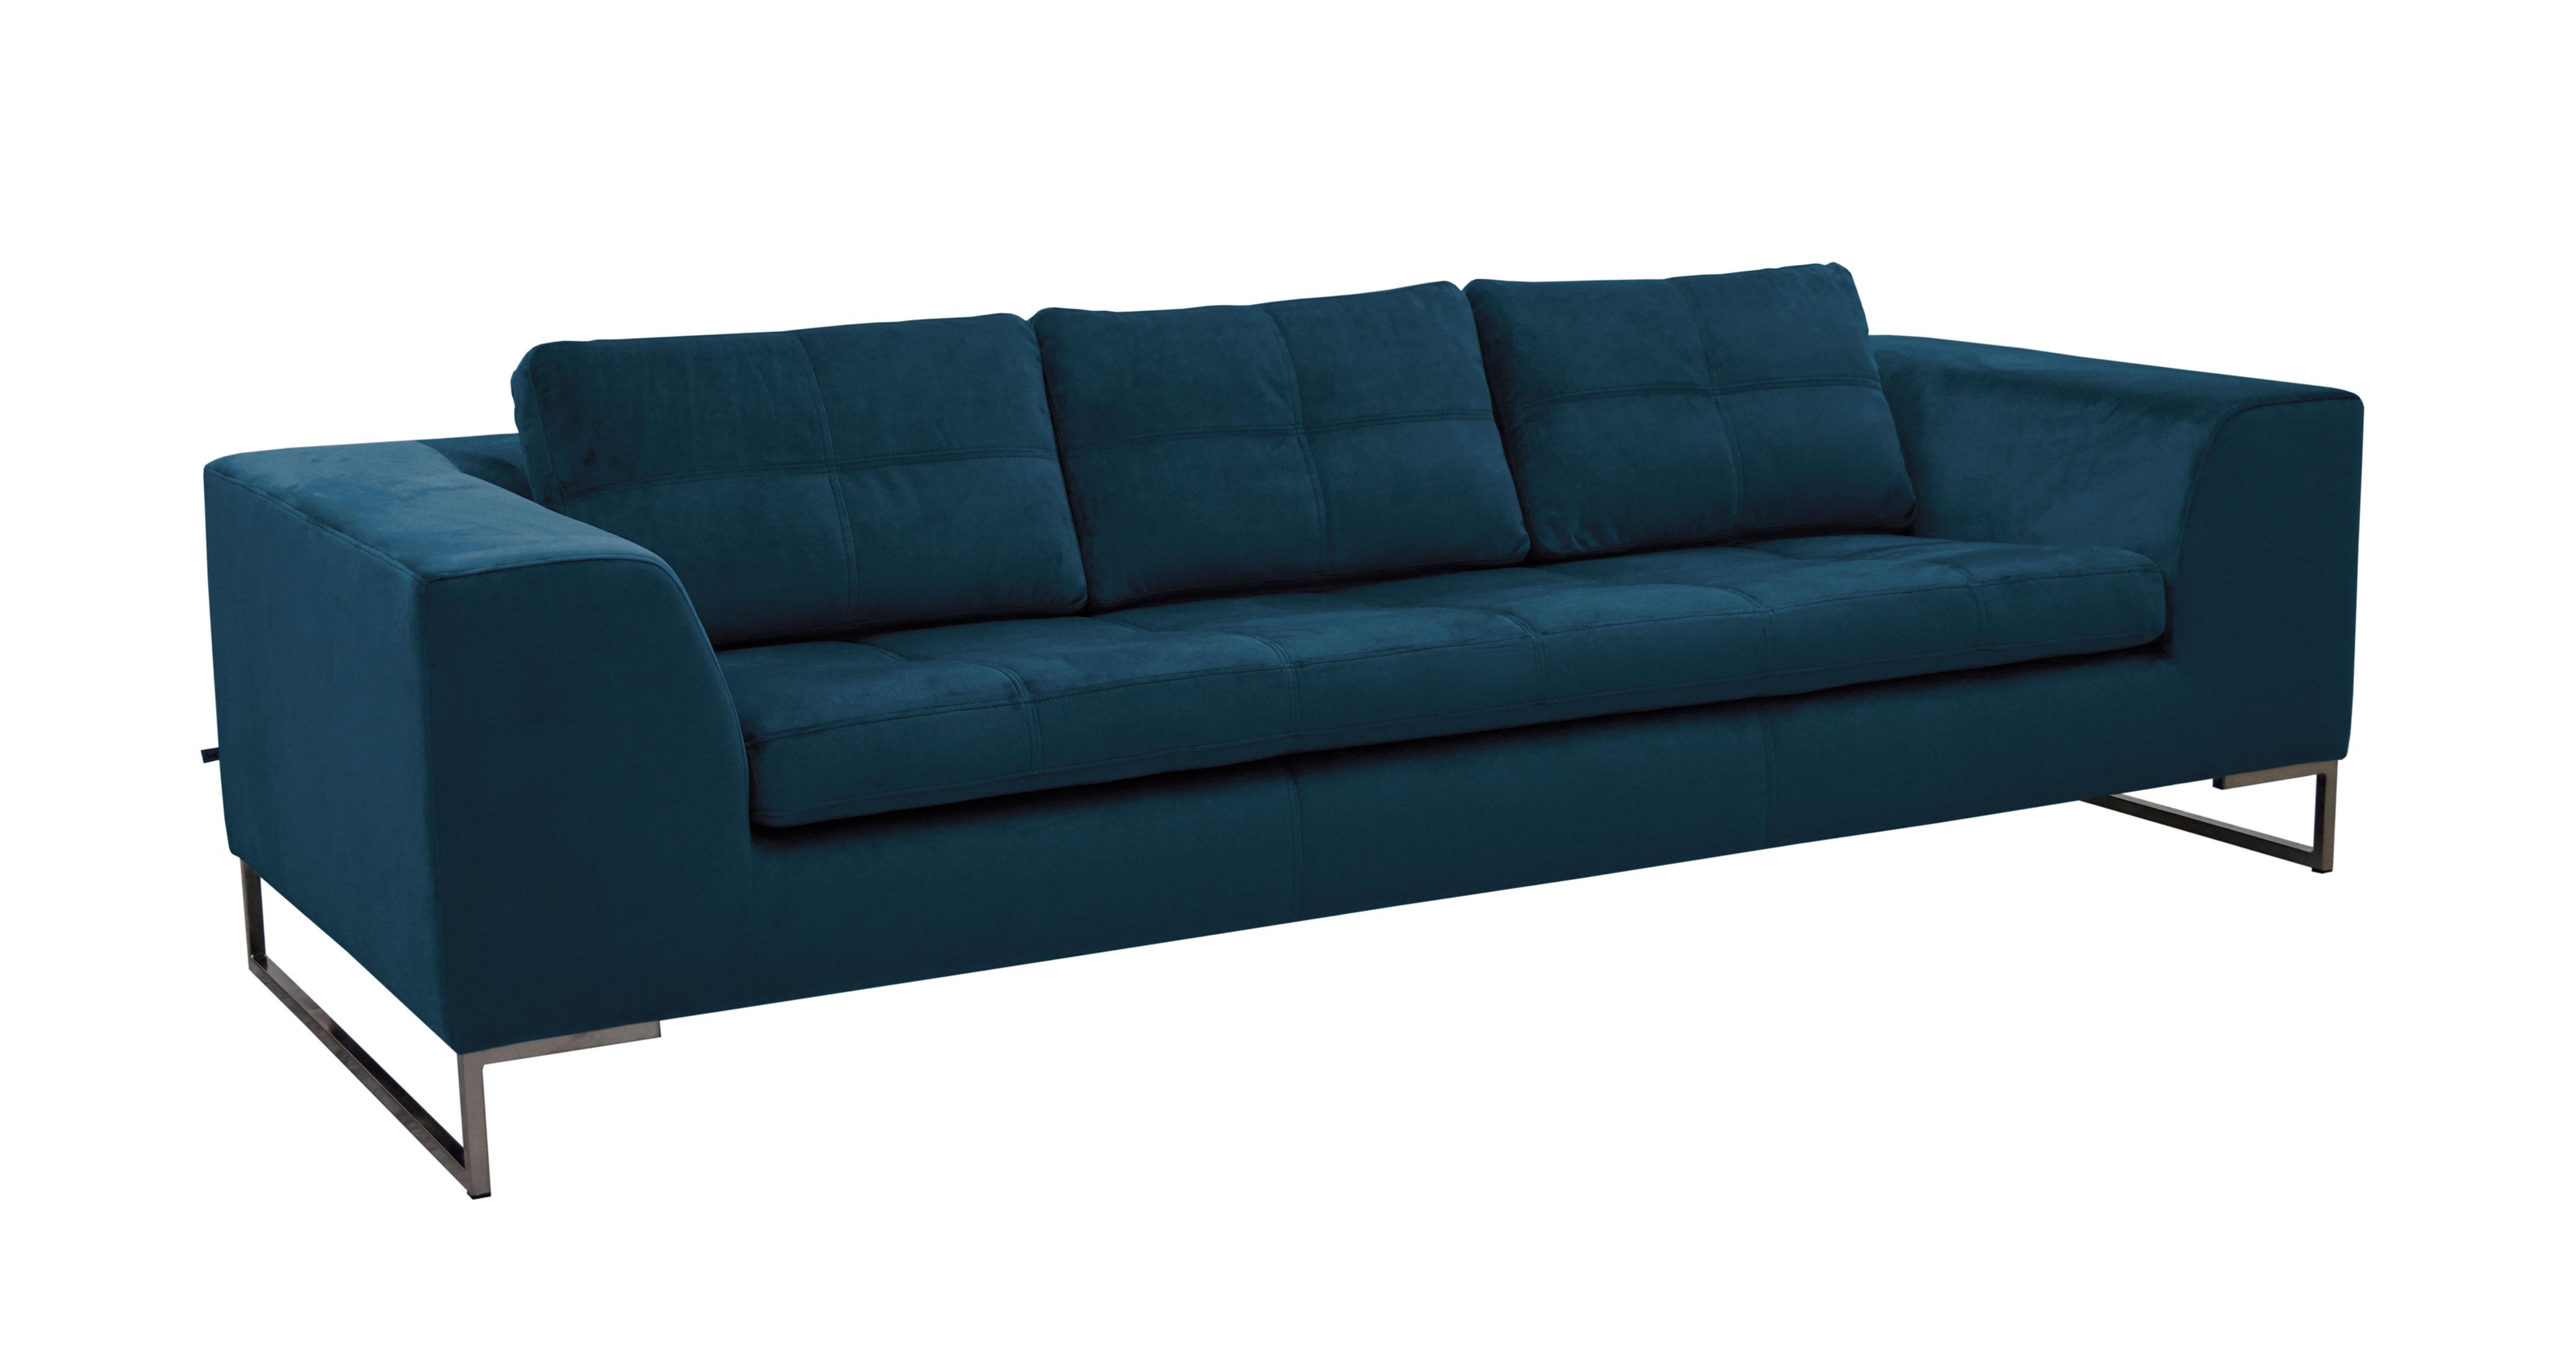 Toleda 3 Seater Sofa | DFS